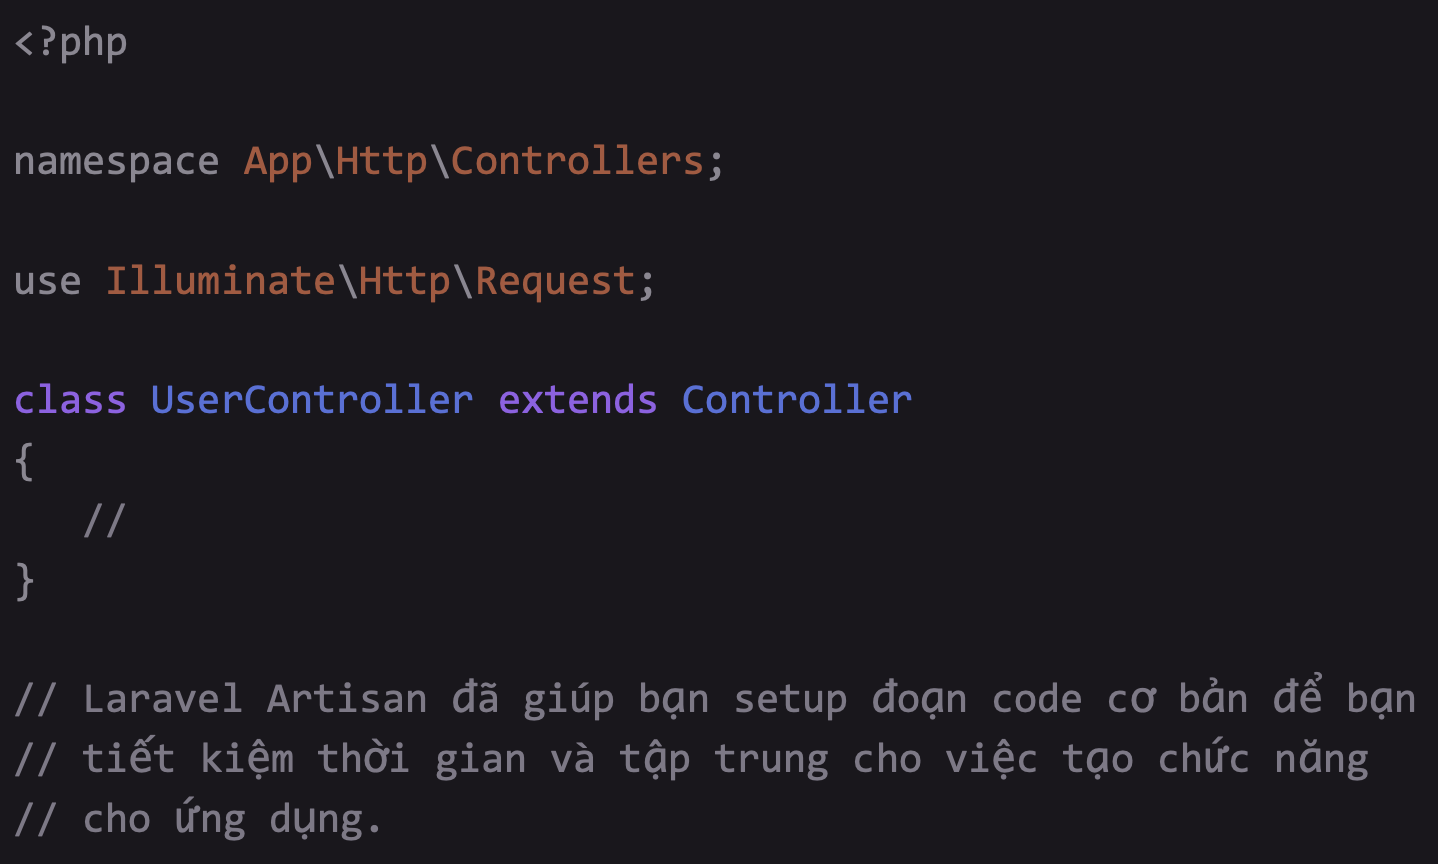 Tạo controller bằng cmd php artisan make:controller UserController